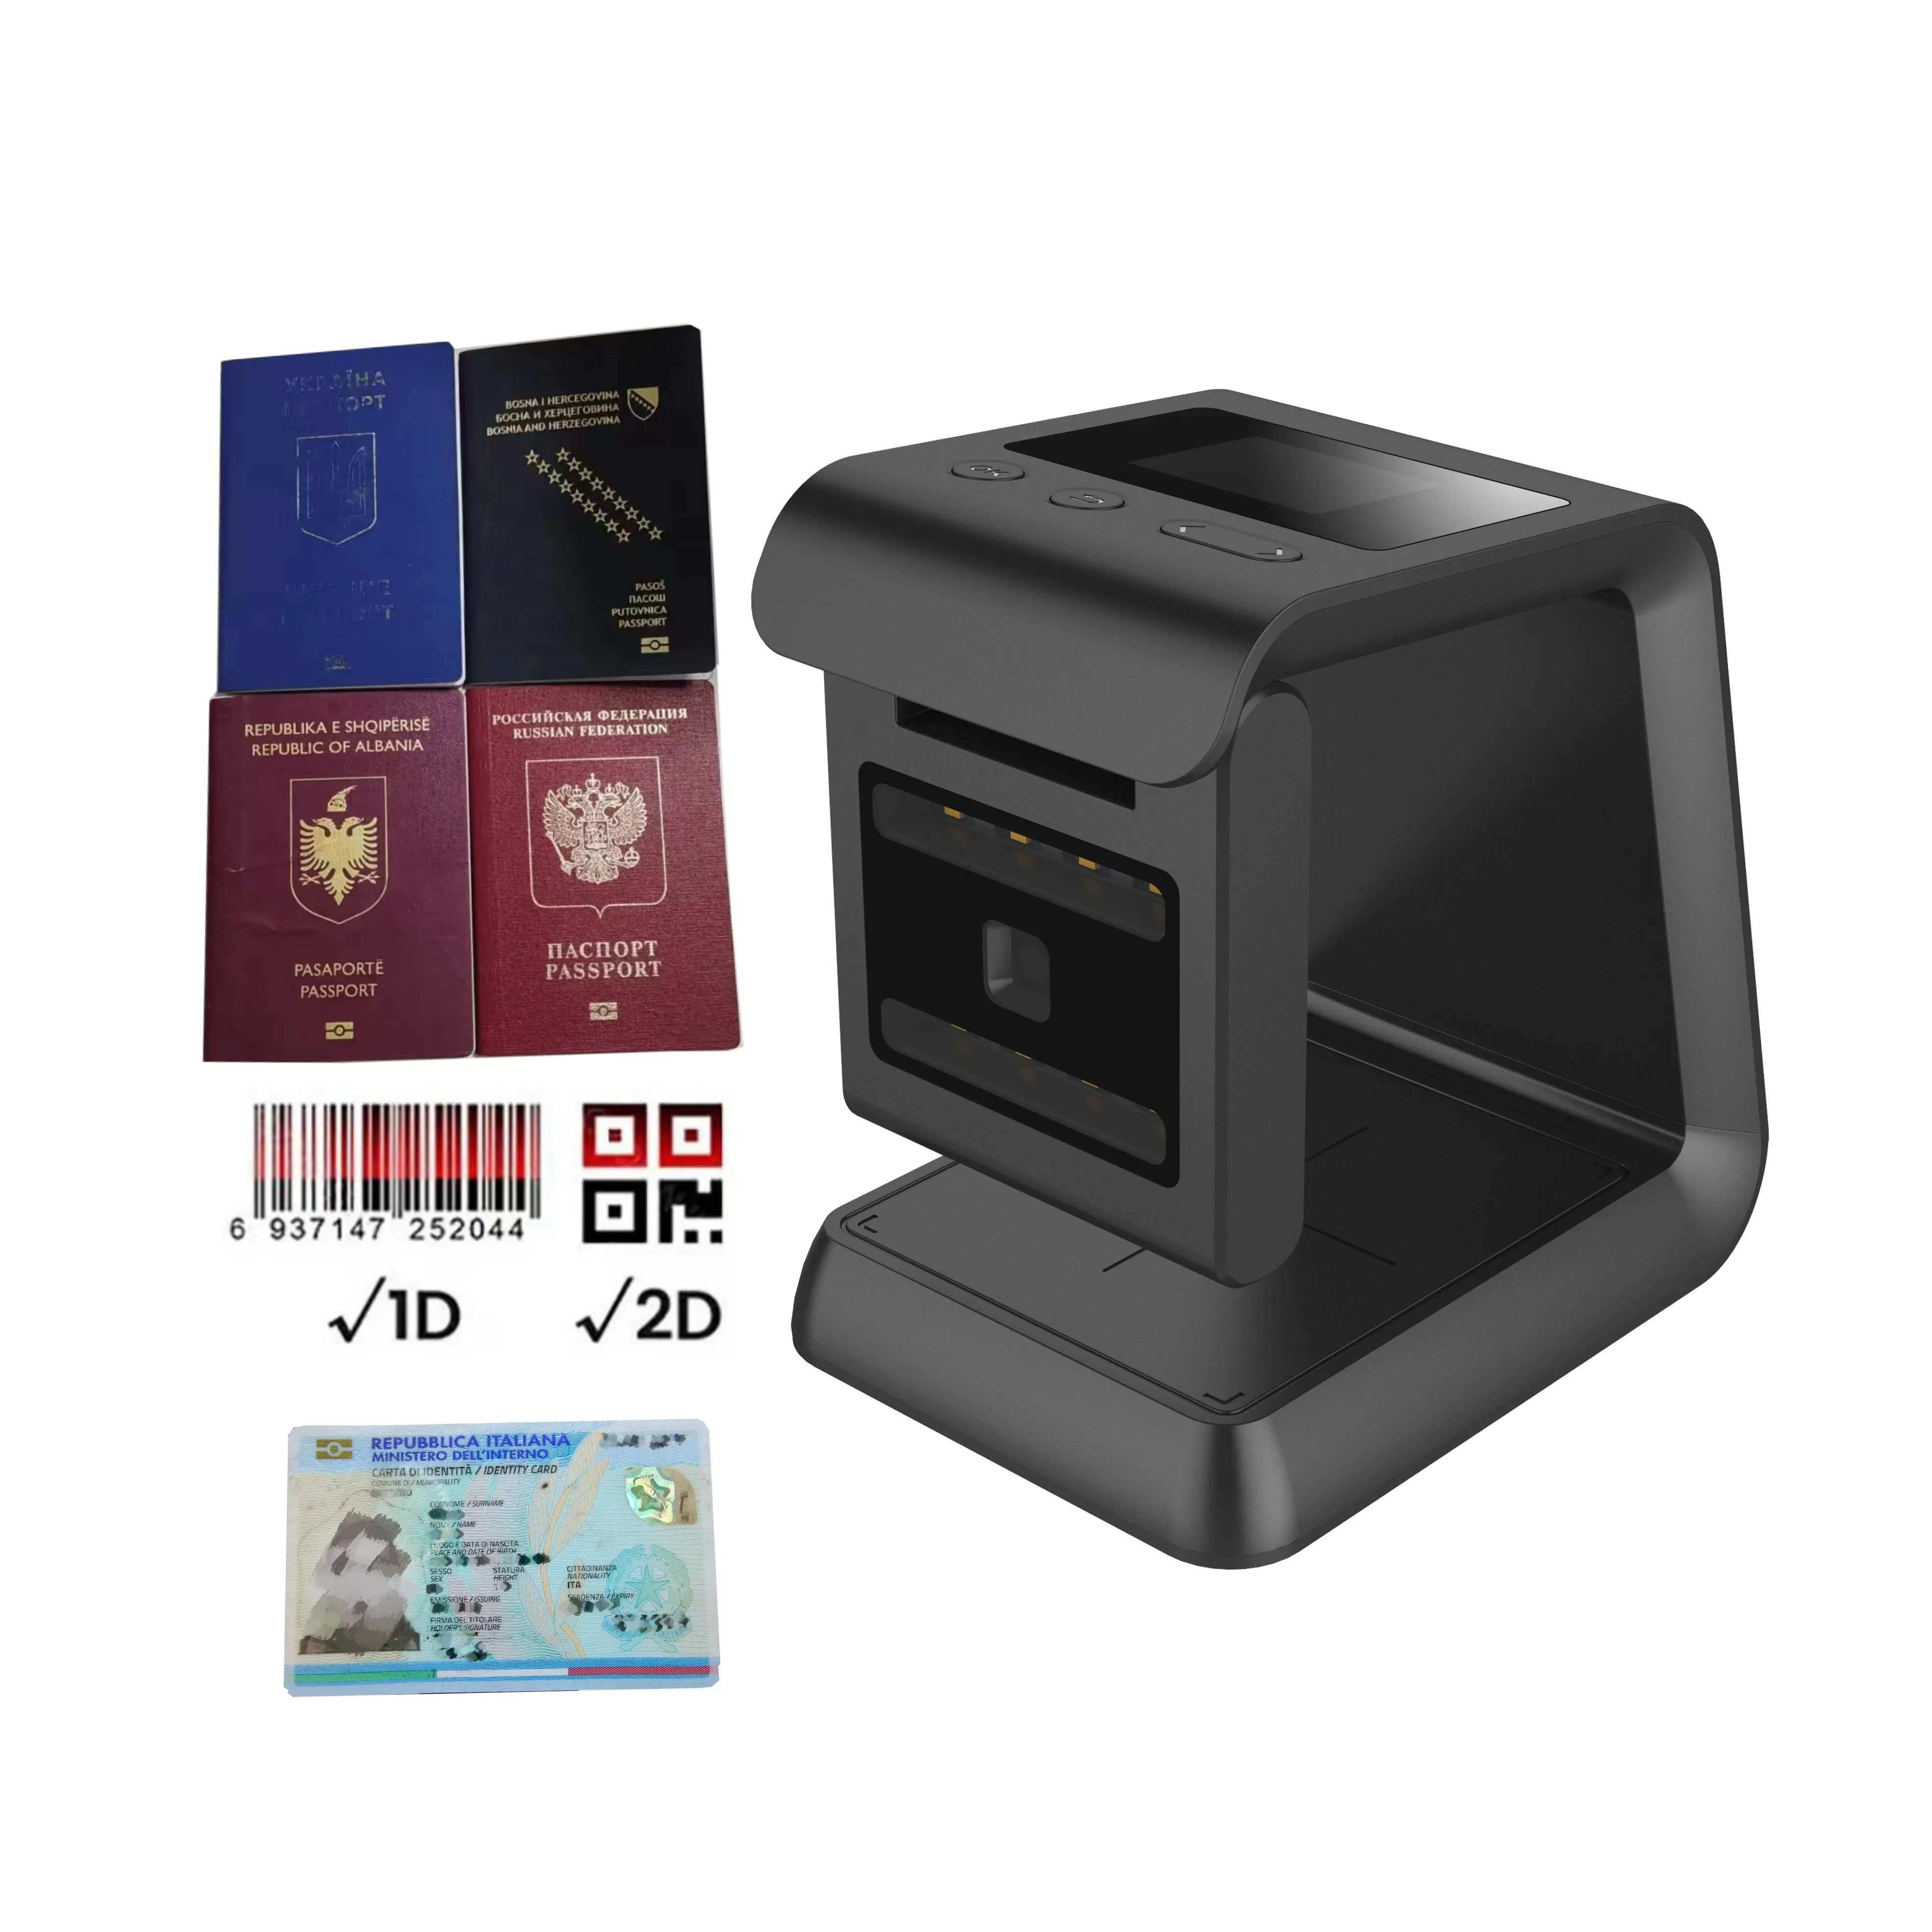 OCR MRZ Reisepass-Scanner Identifikationskarte PDF417 Führerschein USB kabelgebundener Reisescanner mit 1D 2D QR-Barcode lesbar